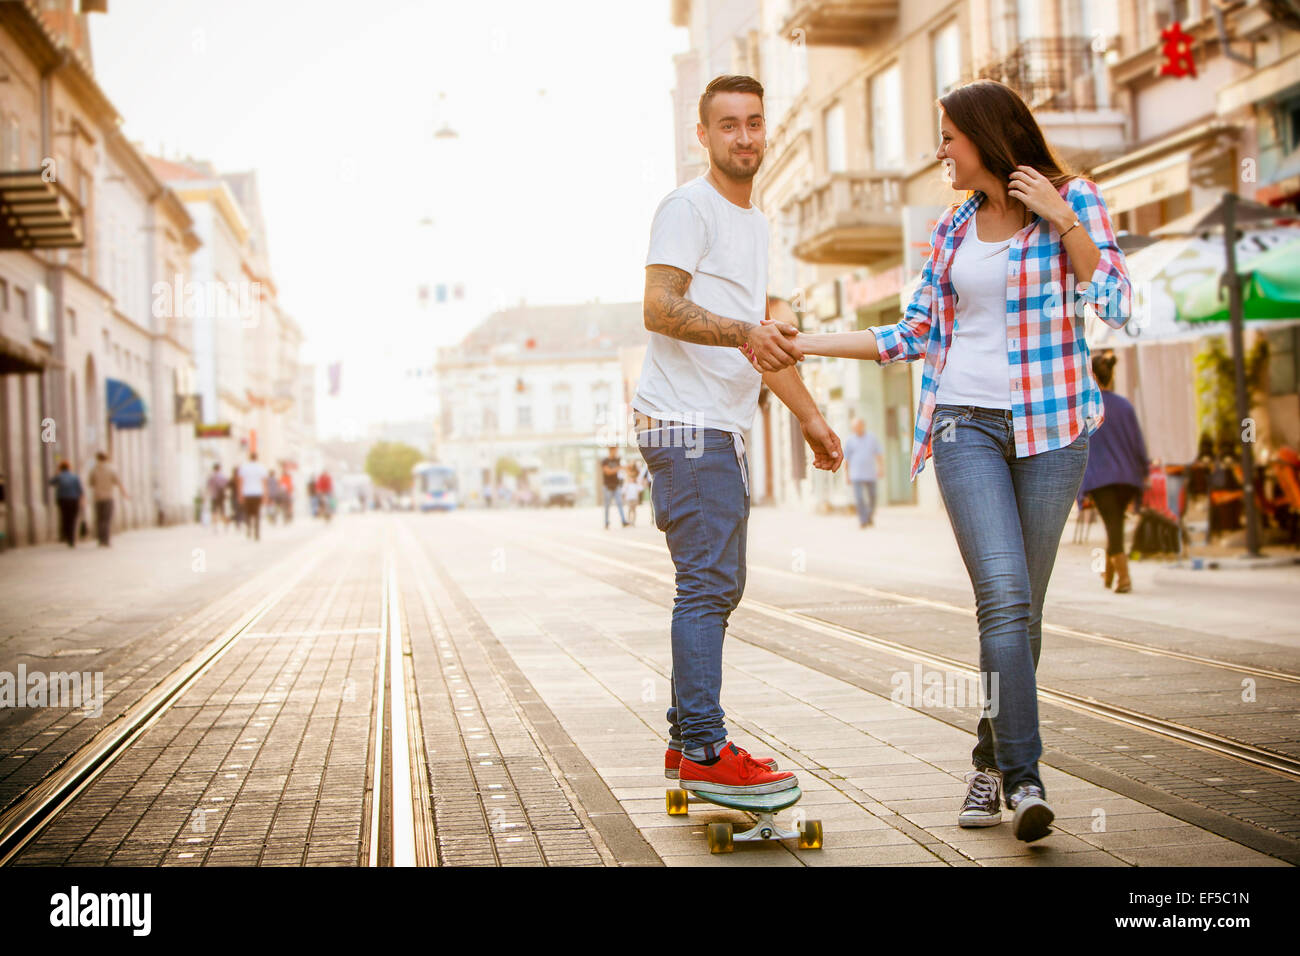 Junger Mann Skateboarden auf Stadtstraße, Frau Unterstützung Stockfoto